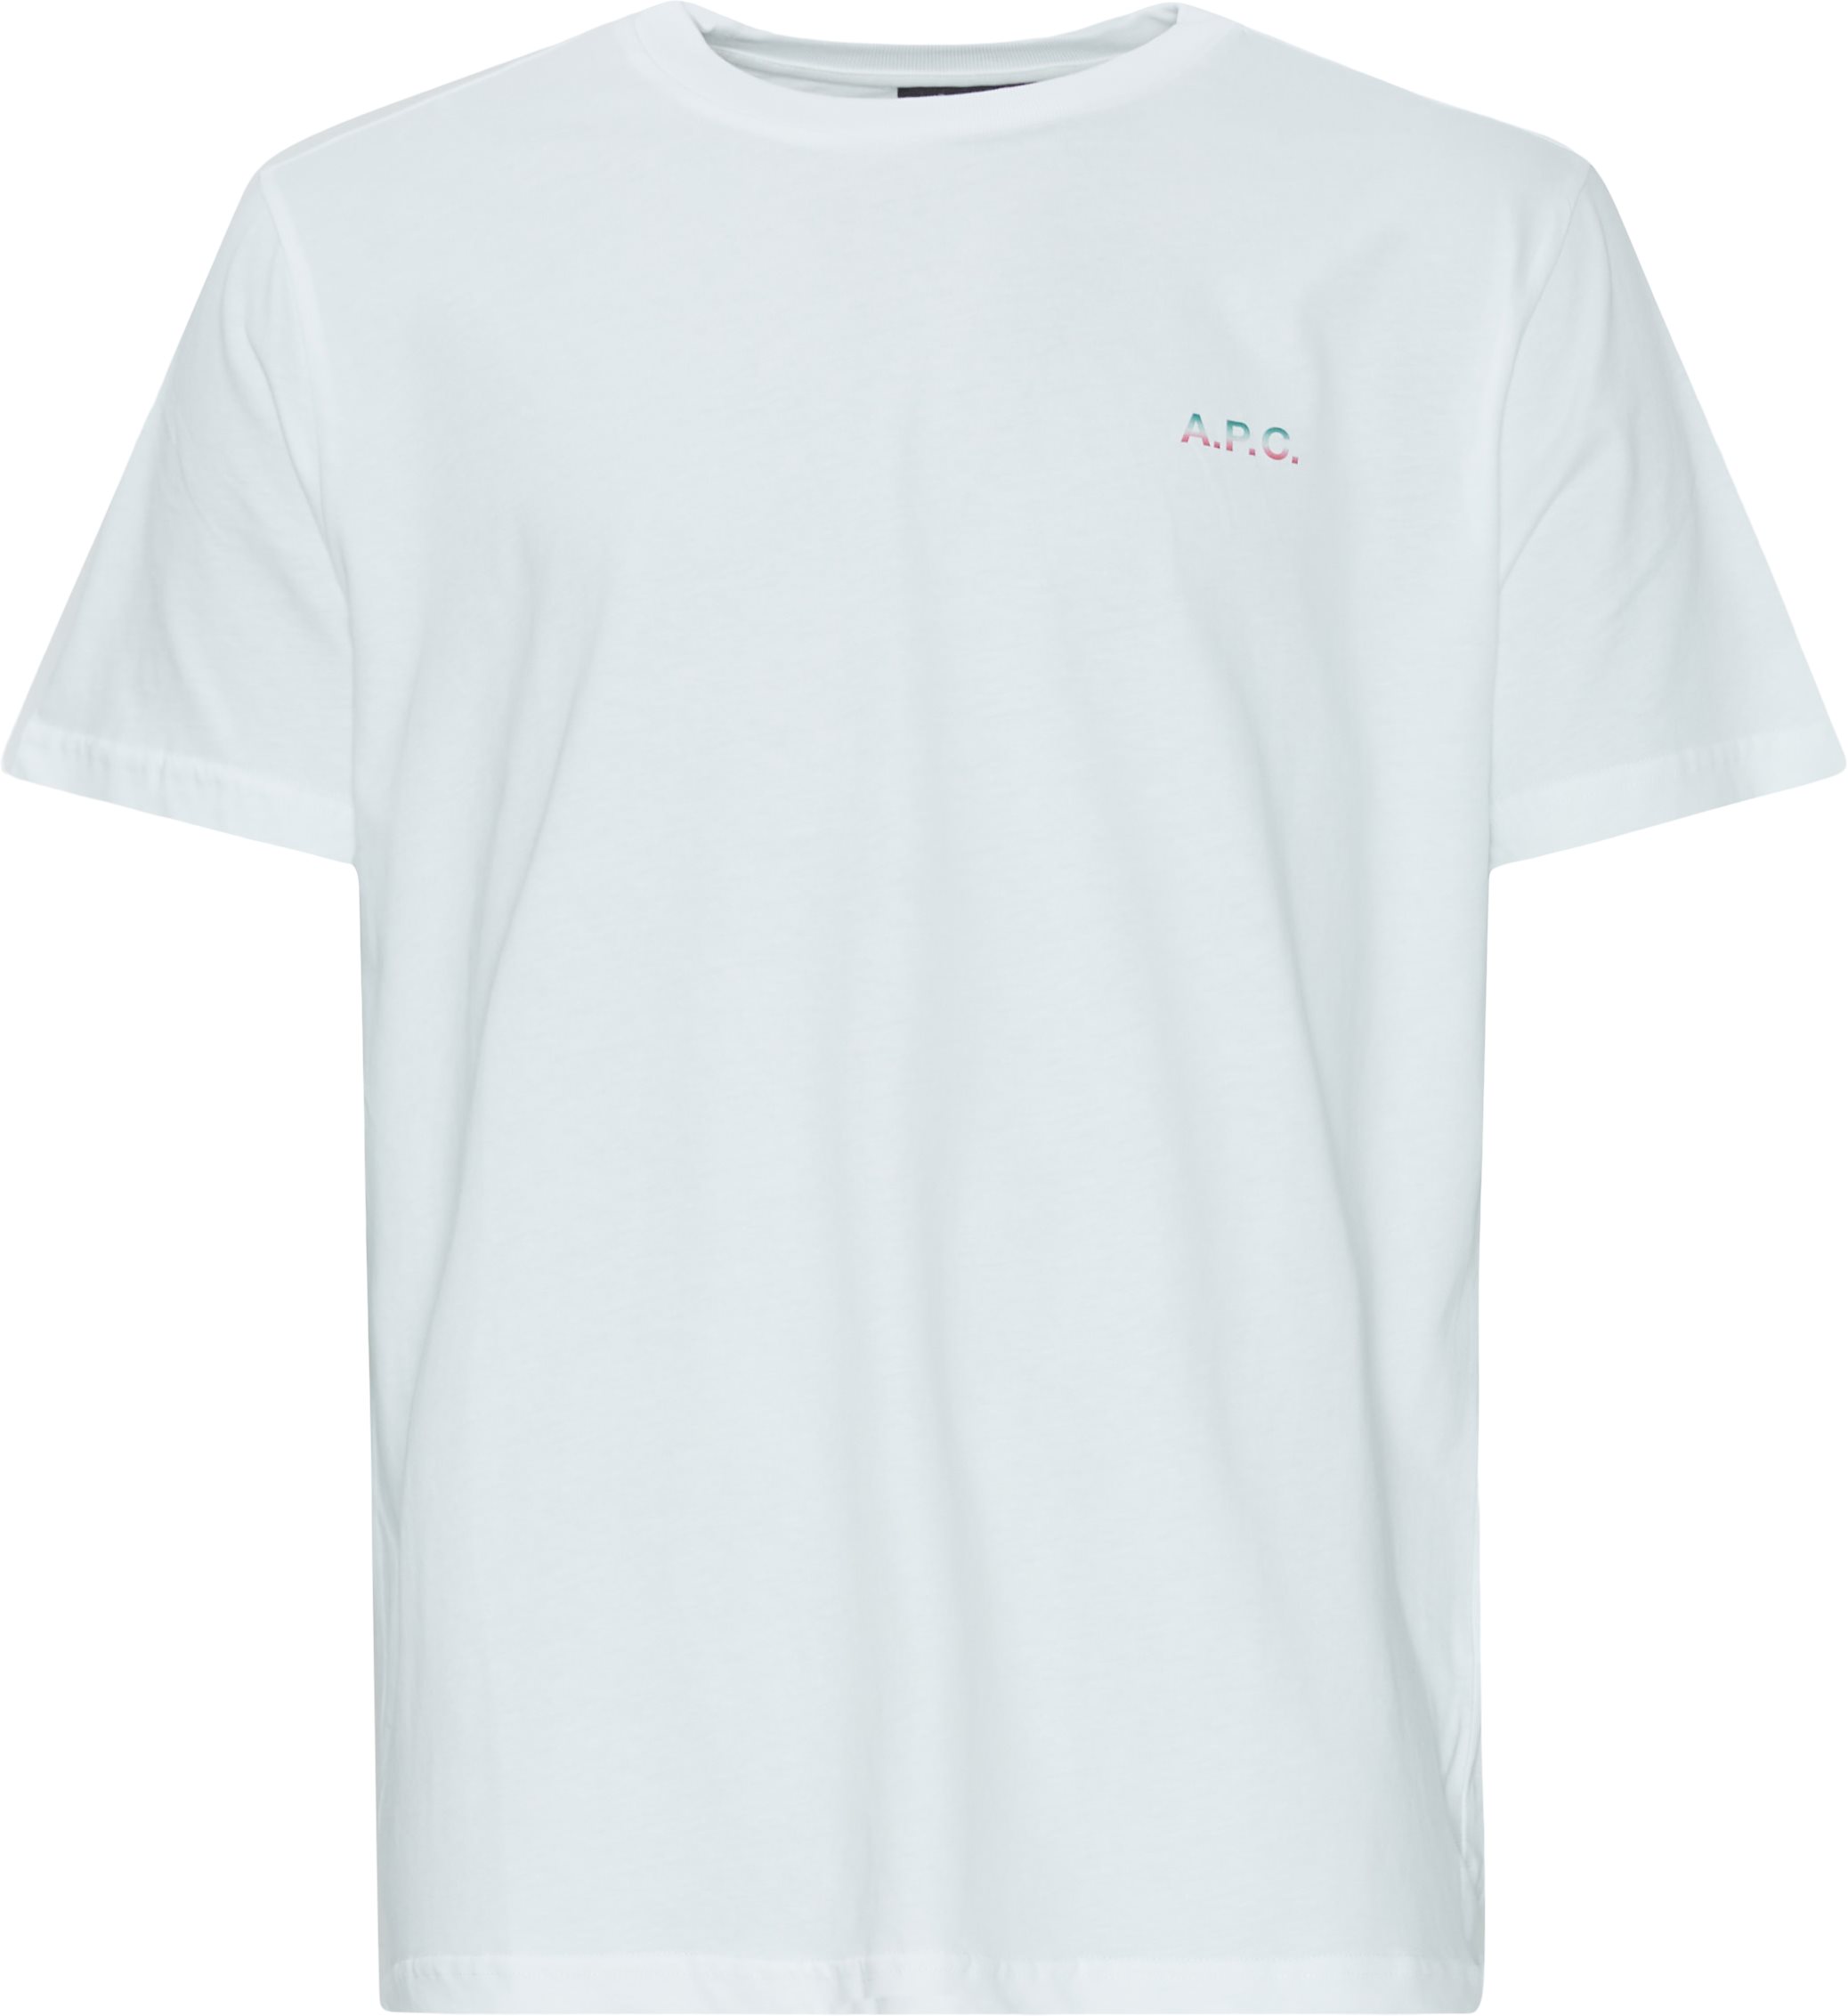 A.P.C. T-shirts COEIO H26360 Hvid